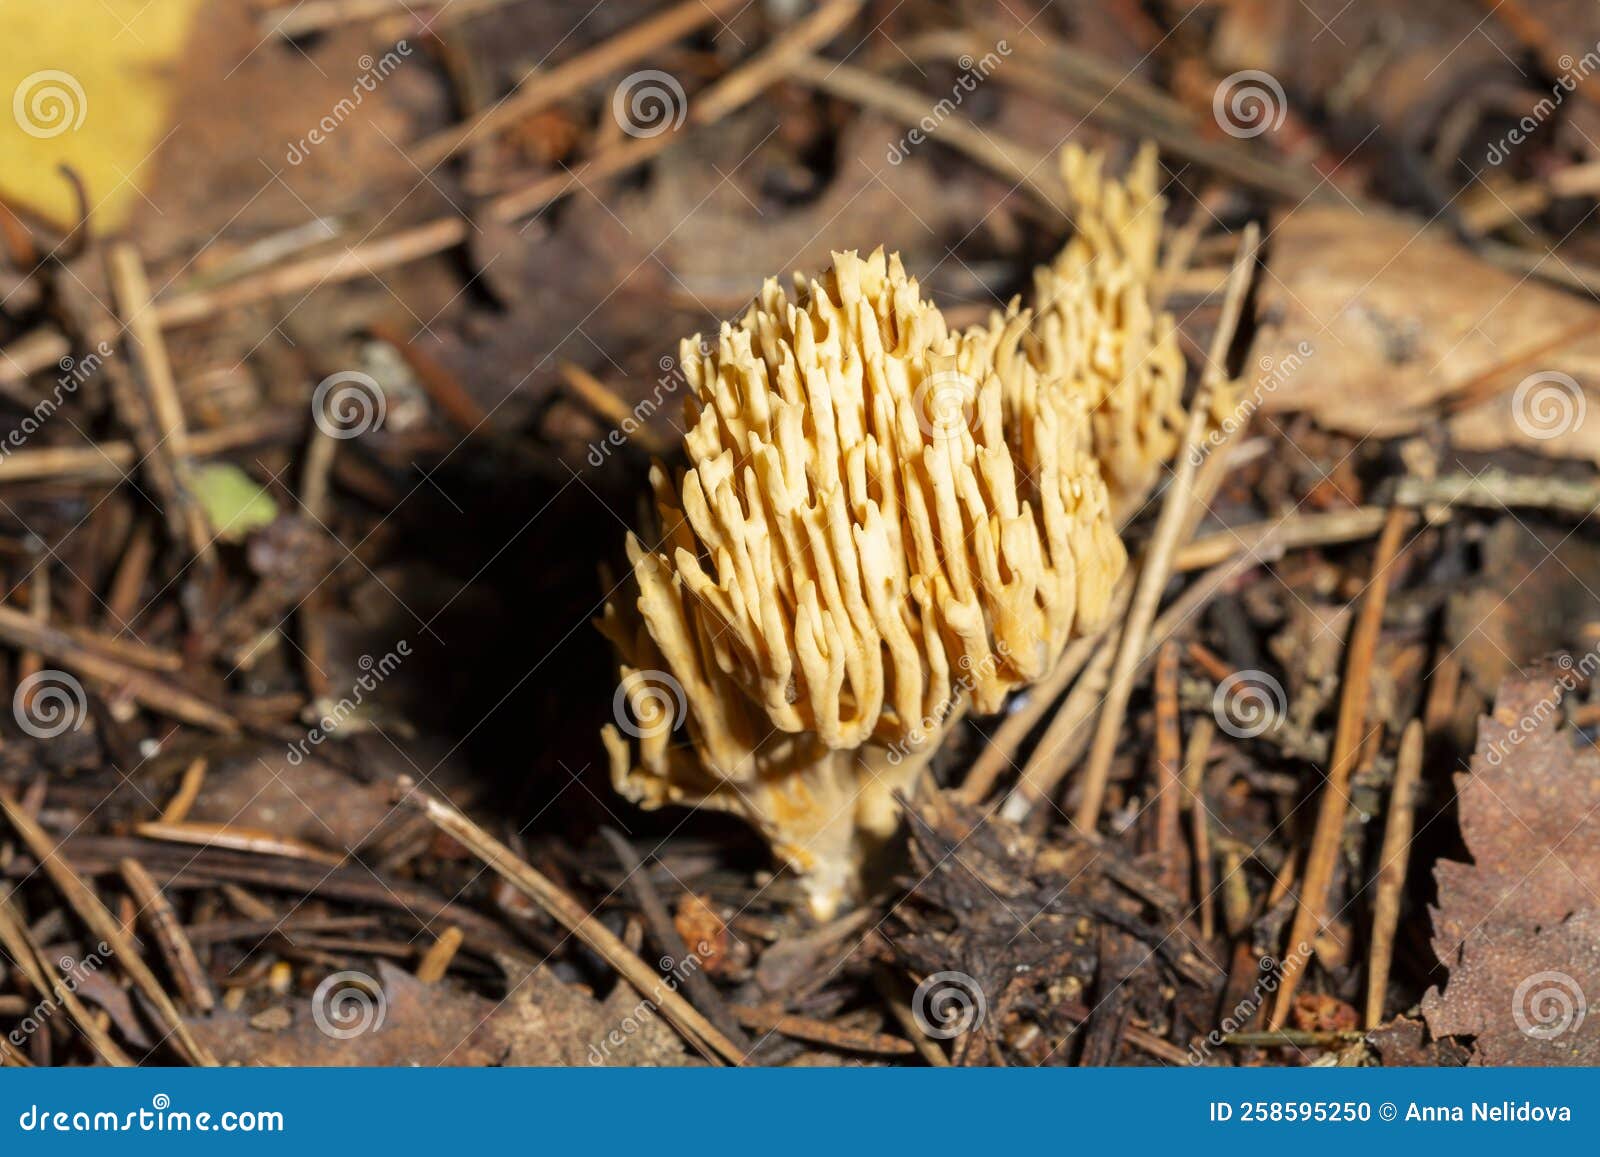 коралловые грибы рамария эуморфа, выращиваемые в природной среде, этот гриб  растет Стоковое Фото - изображение насчитывающей завод, грибы: 258595250